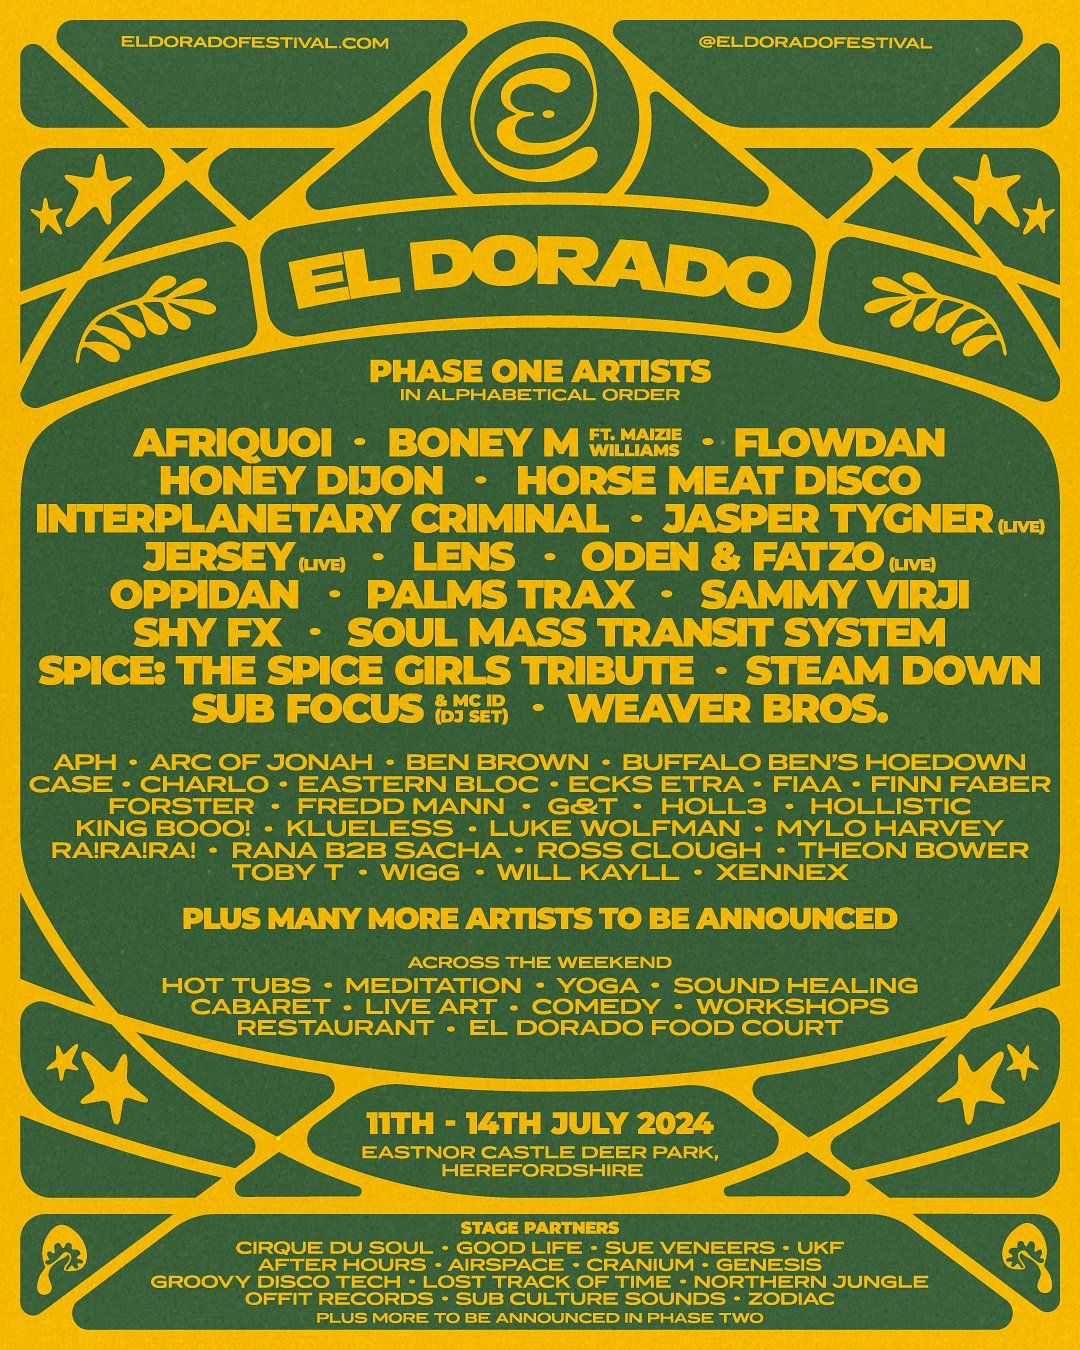 El Dorado Festival 2024 Unveils Phase 1 Lineup That Festival Site